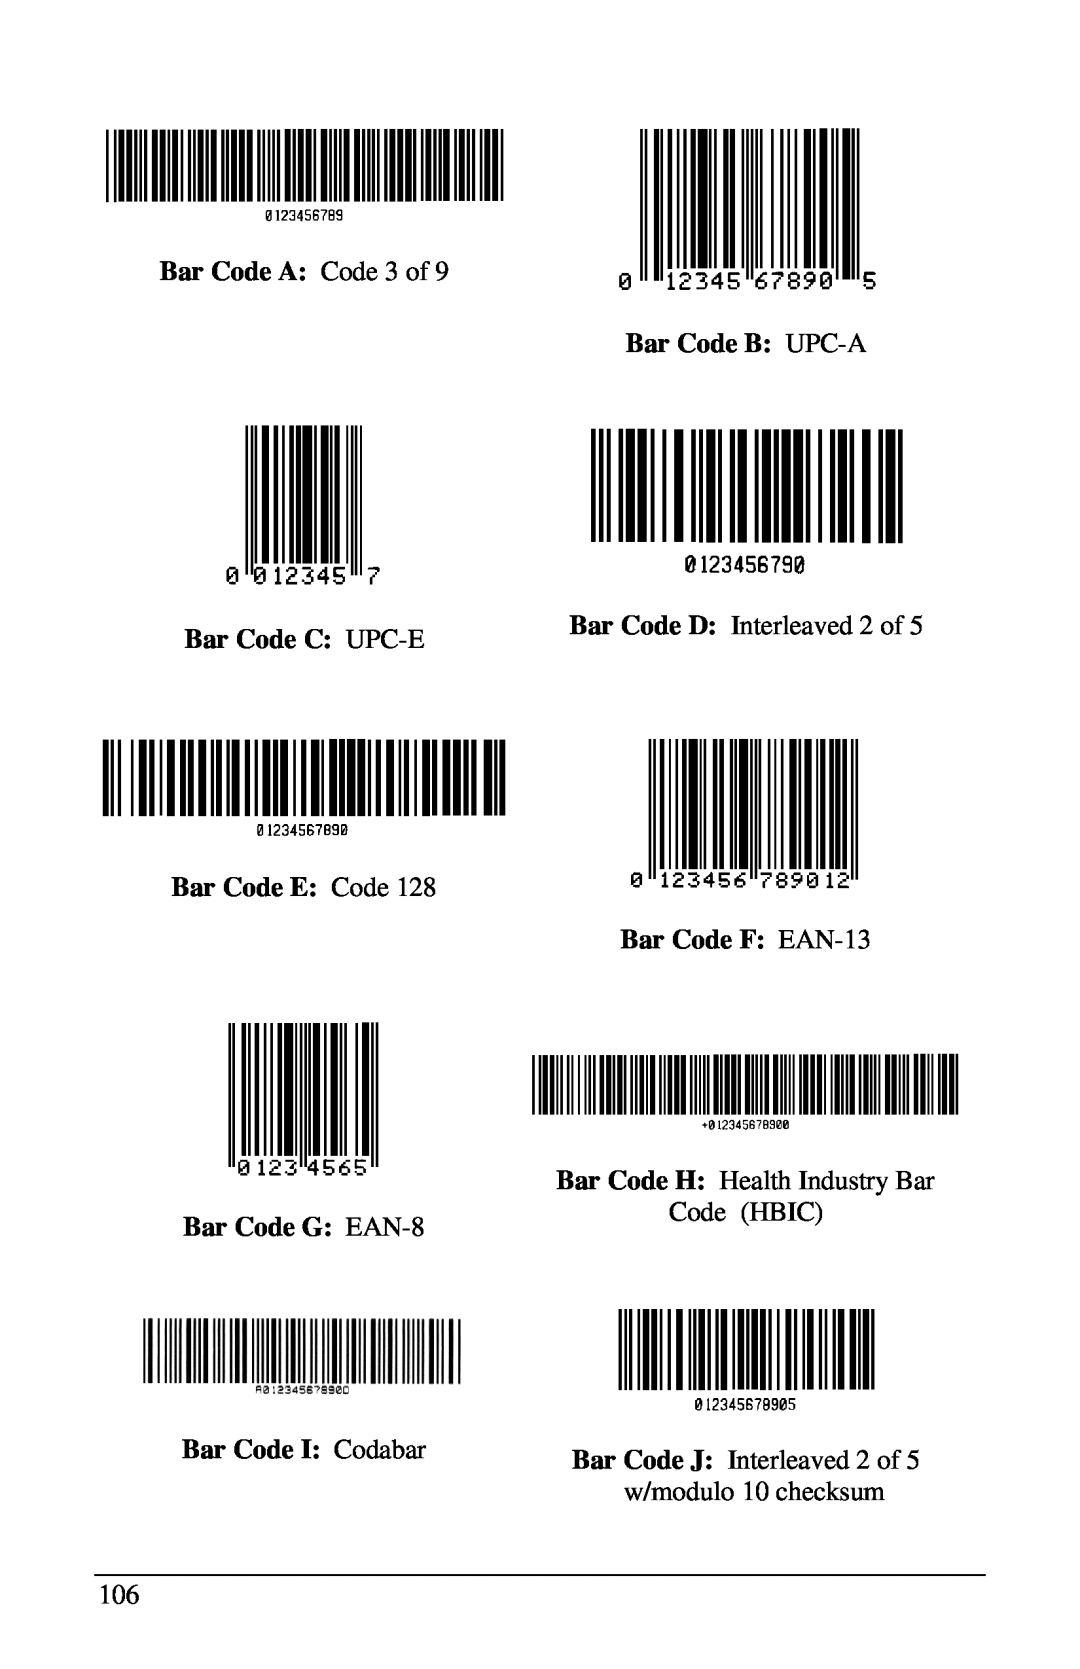 Brady 2461 Bar Code A Code 3 of Bar Code C UPC-E Bar Code E Code, Bar Code G EAN-8 Bar Code I Codabar, Bar Code B UPC-A 